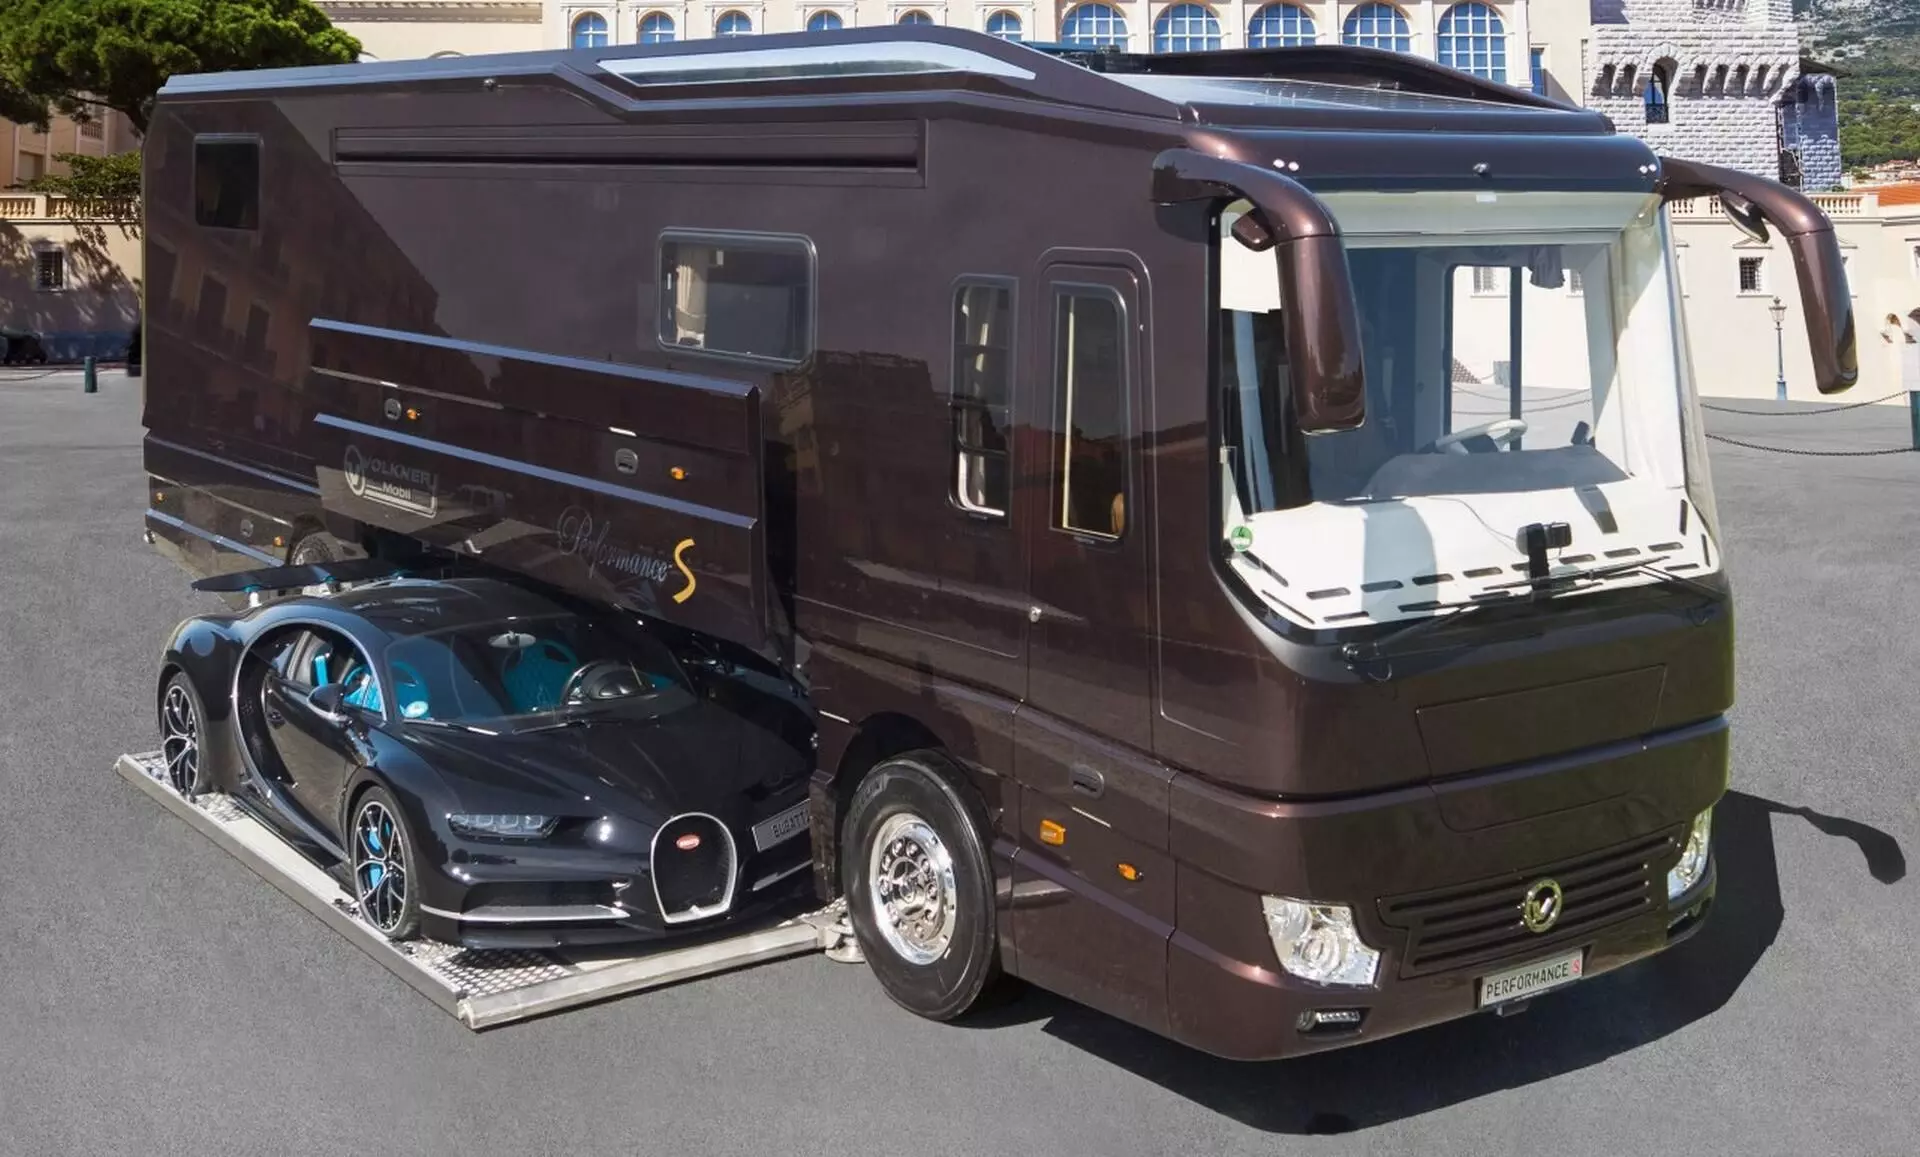 German motorhome specialist Volkner caravan can house